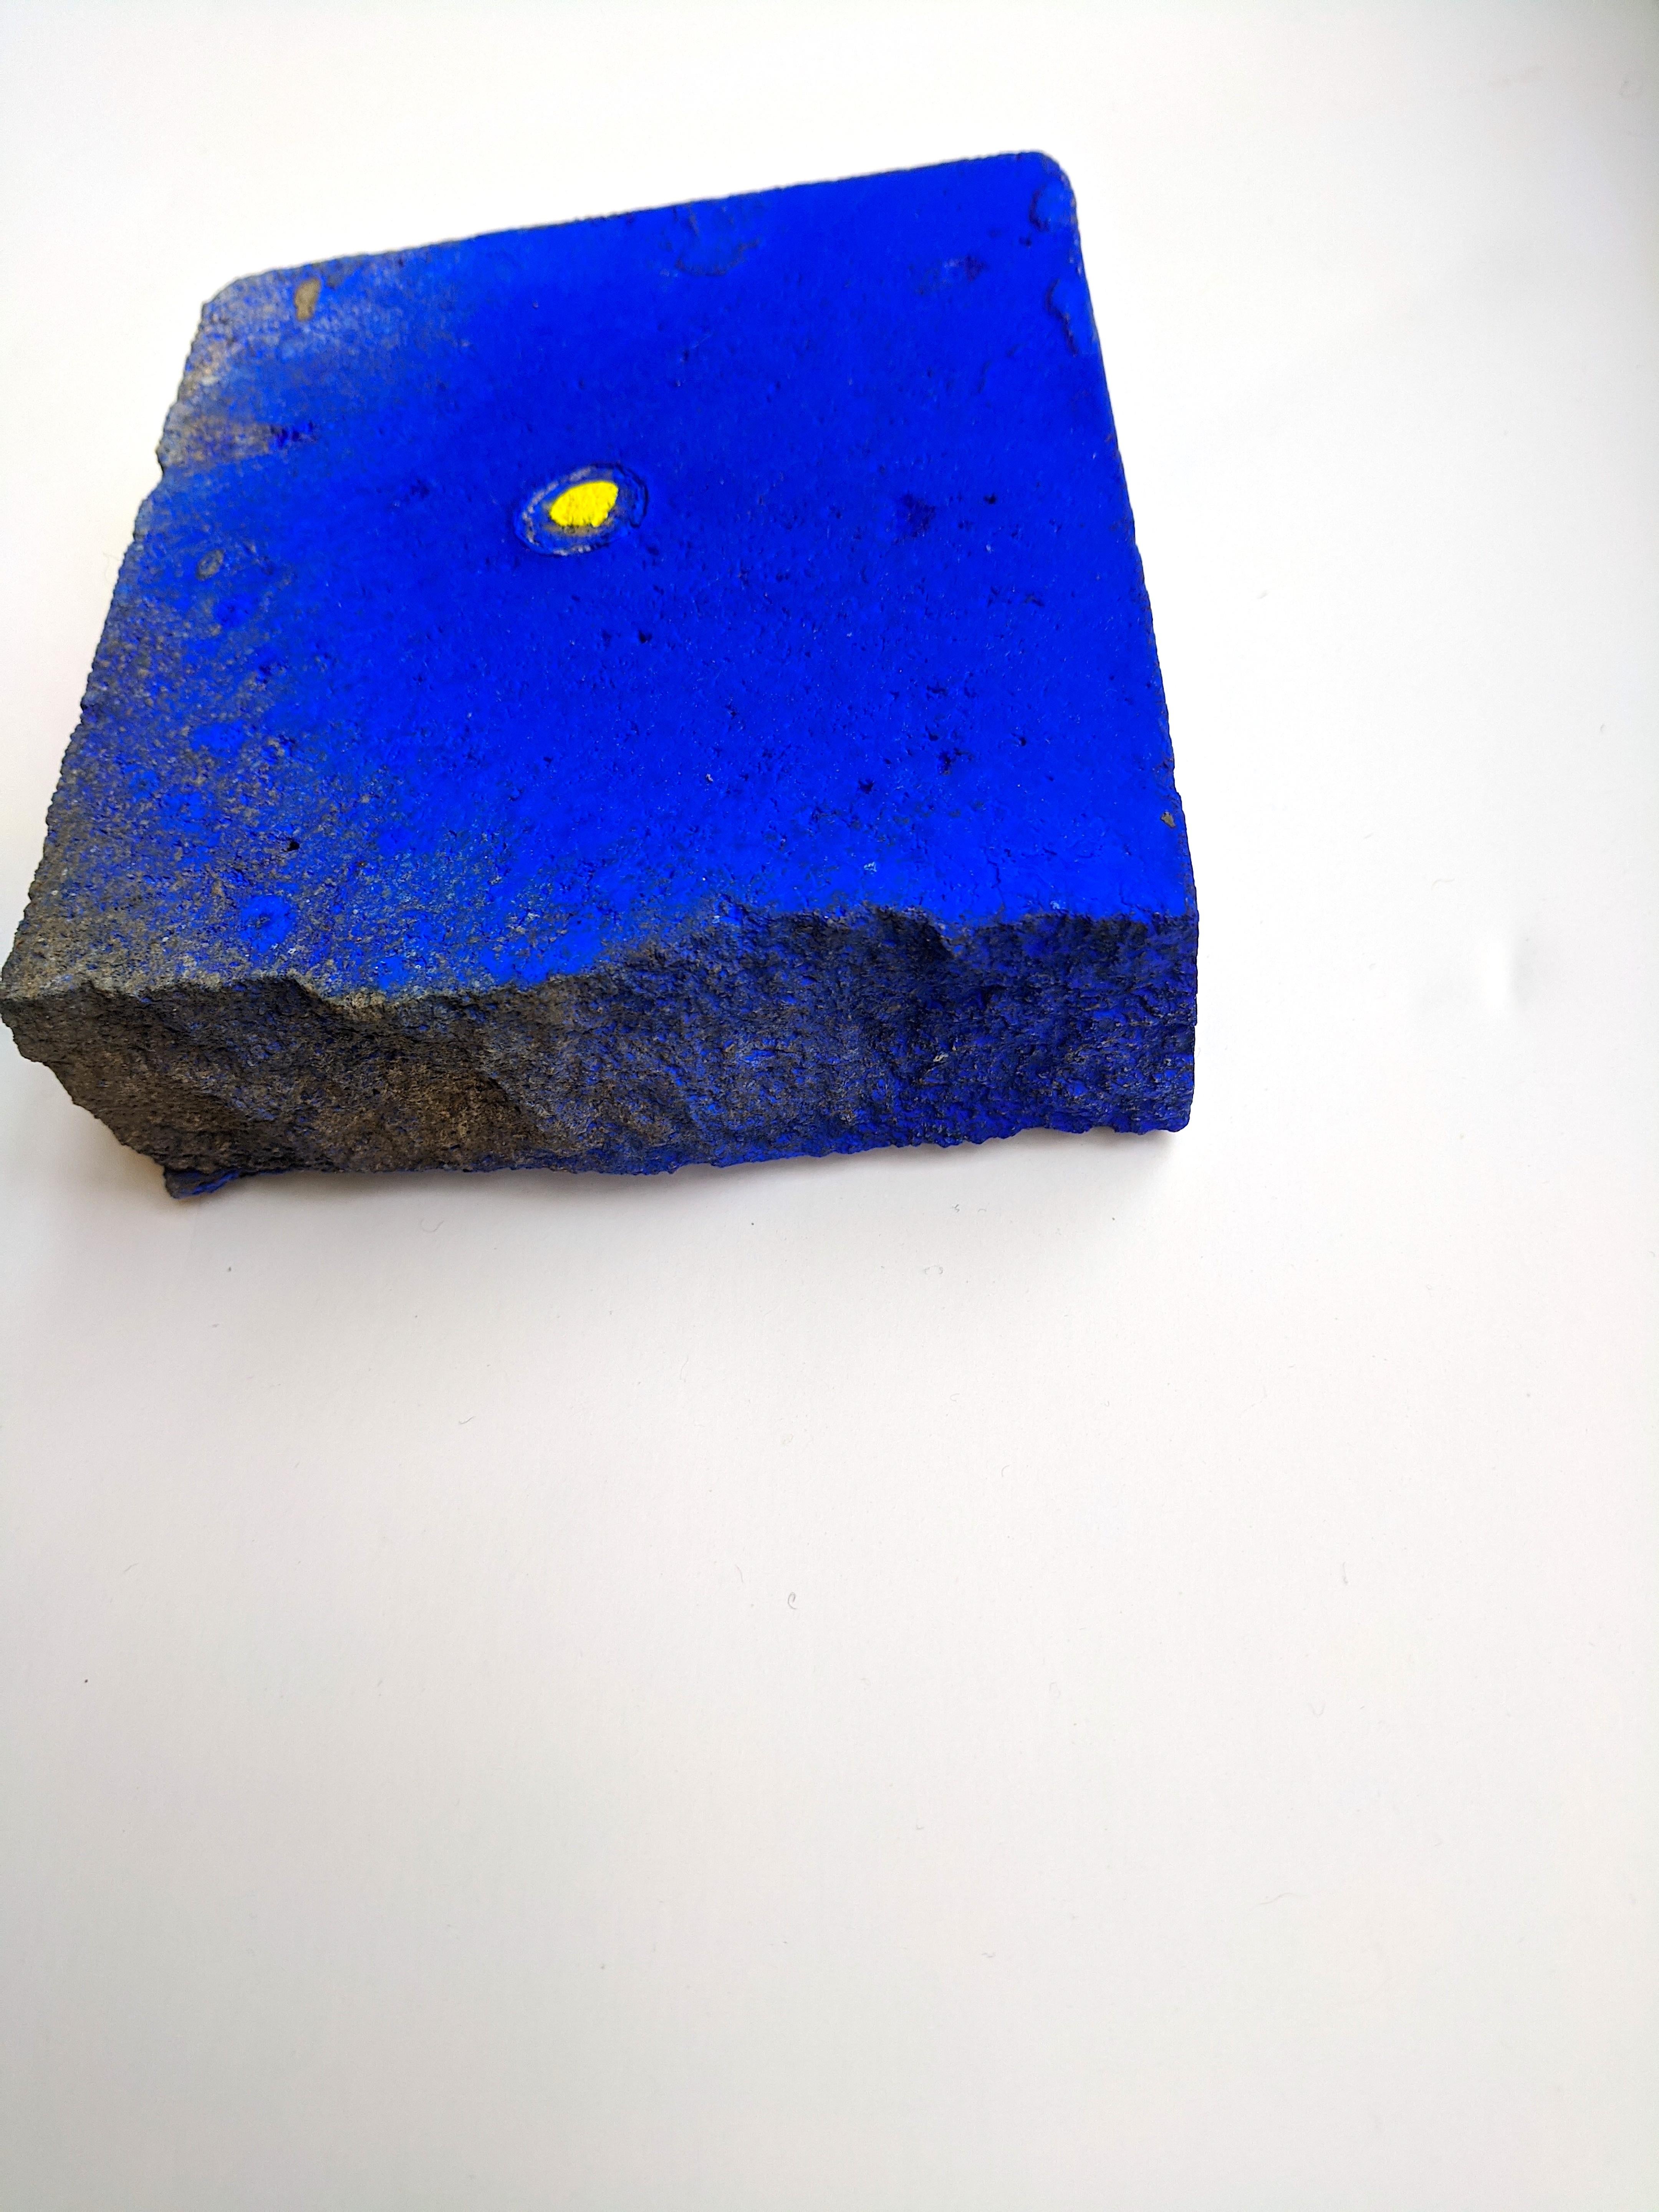 Ellen Hackl Fagan_ Seeking the Sound of Cobalt Blue_Paver 1_2020_objet trouvé en vente 1